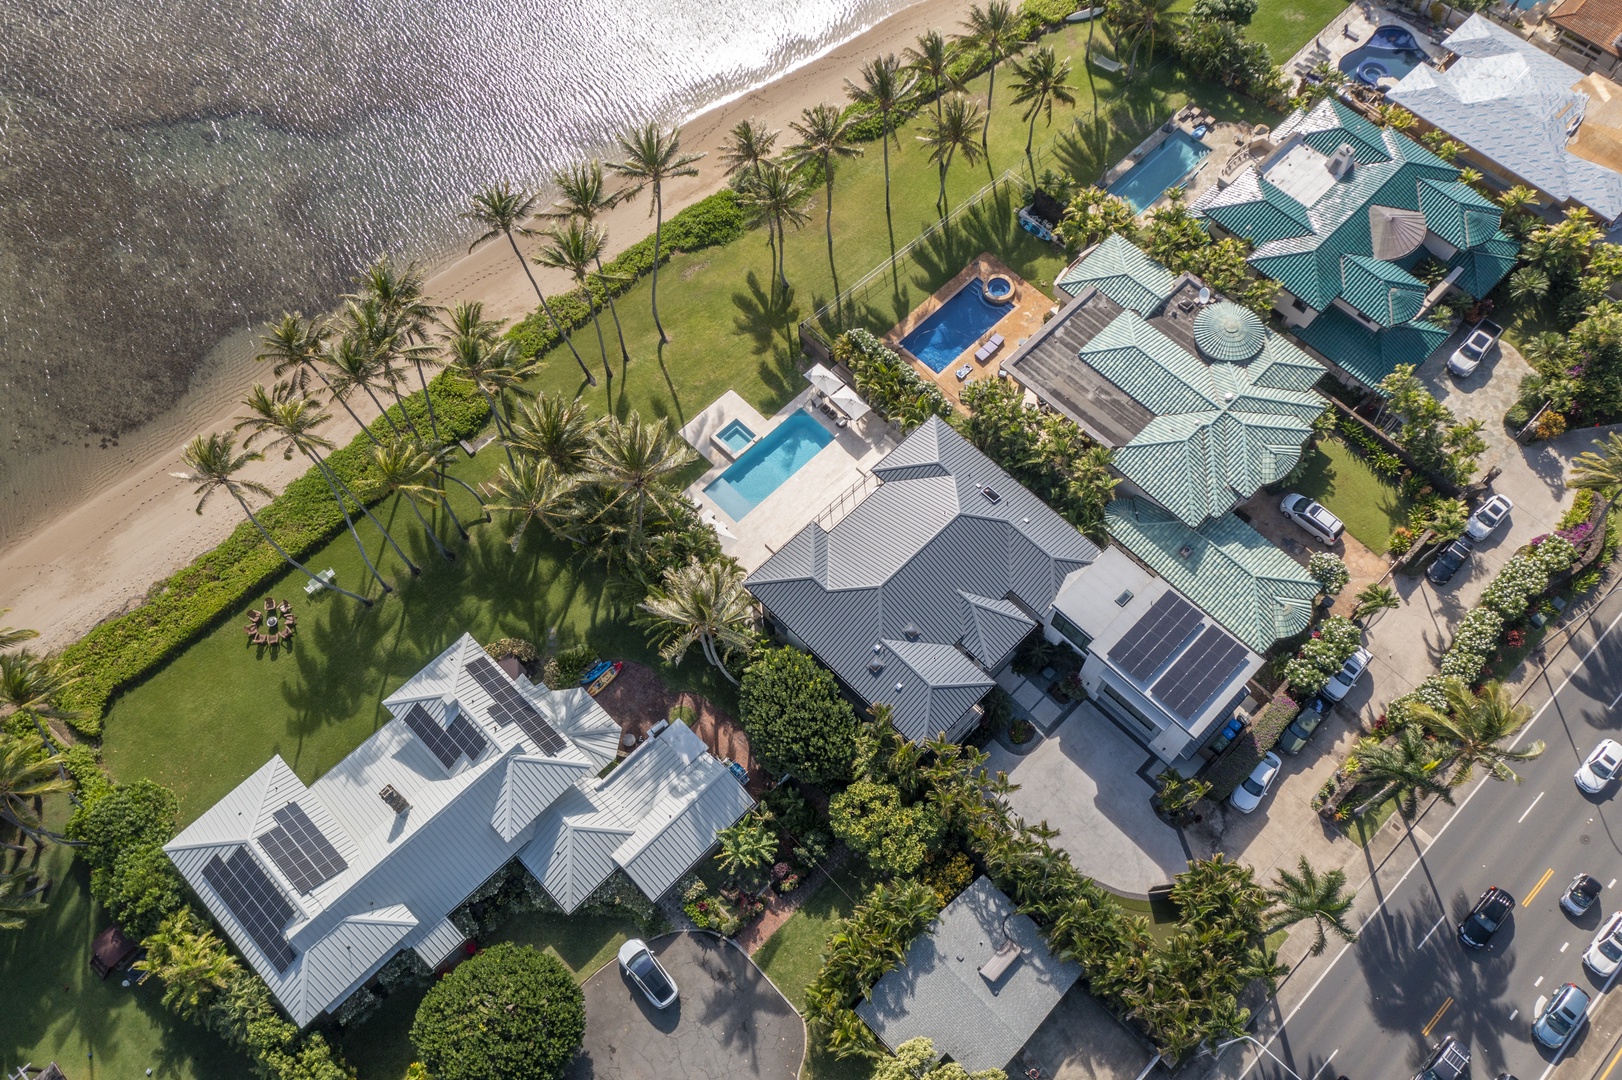 Honolulu Vacation Rentals, Niu Beach Estate - 